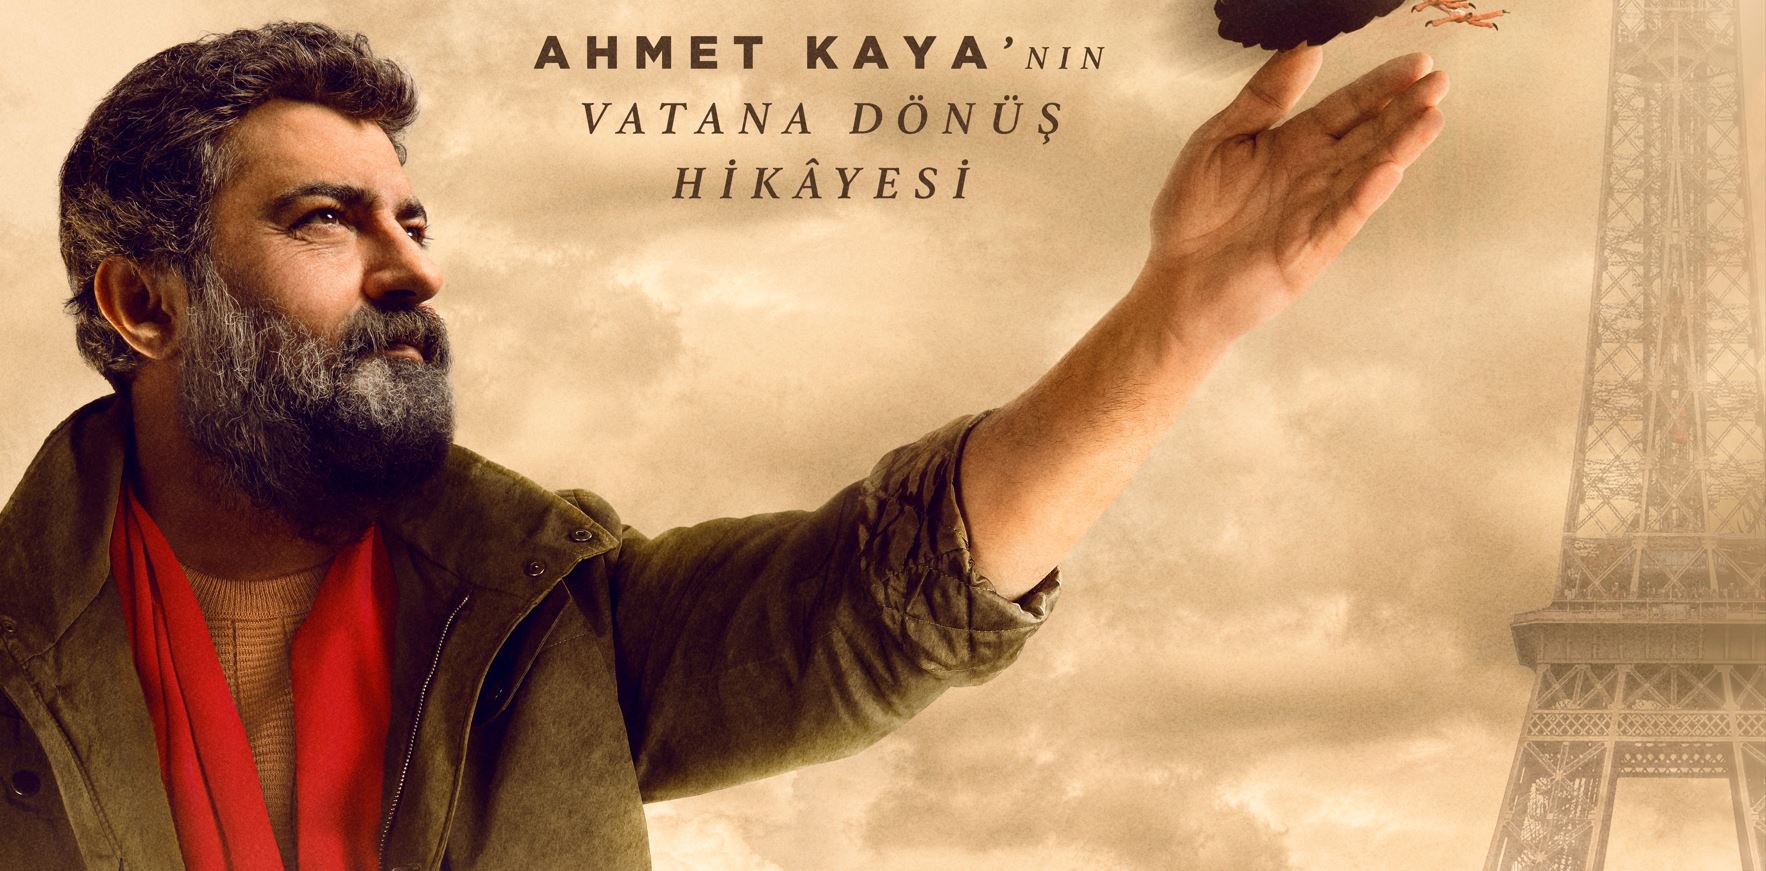 Ahmet Kaya'nın hayatını anlatan "Ahmet'in Türküsü" filmi bugün vizyona girdi